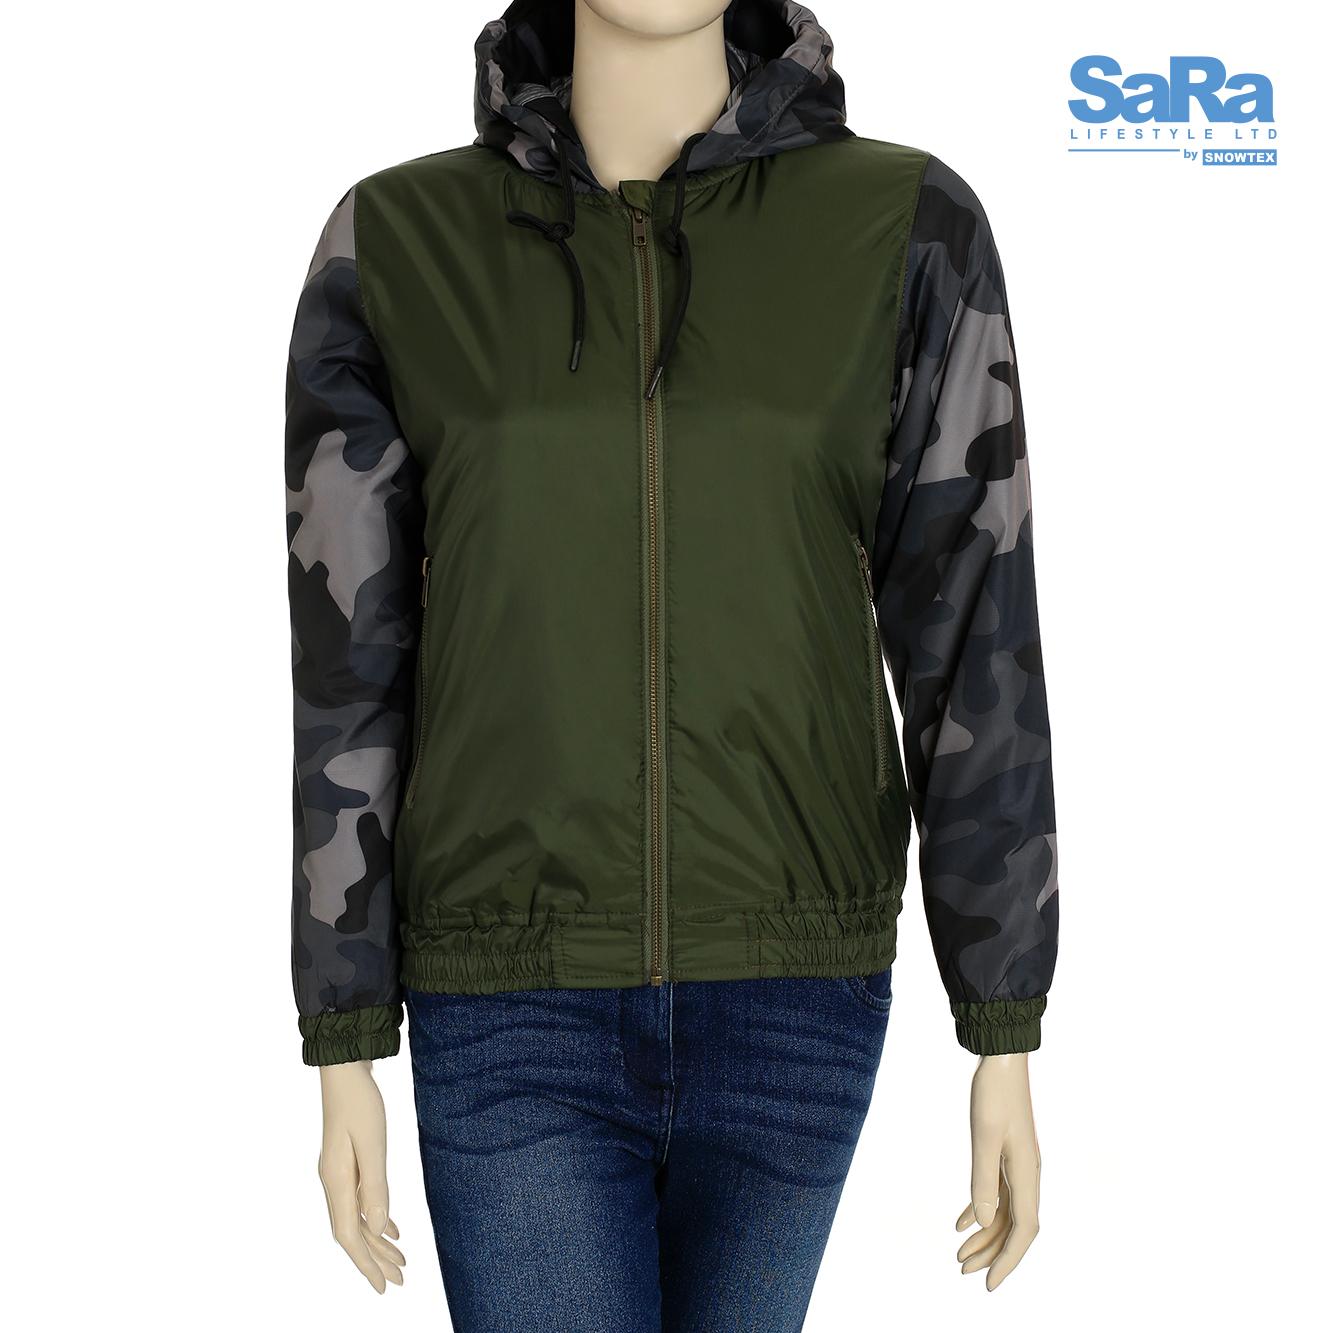 SaRa Surplus Green Jacket for Women